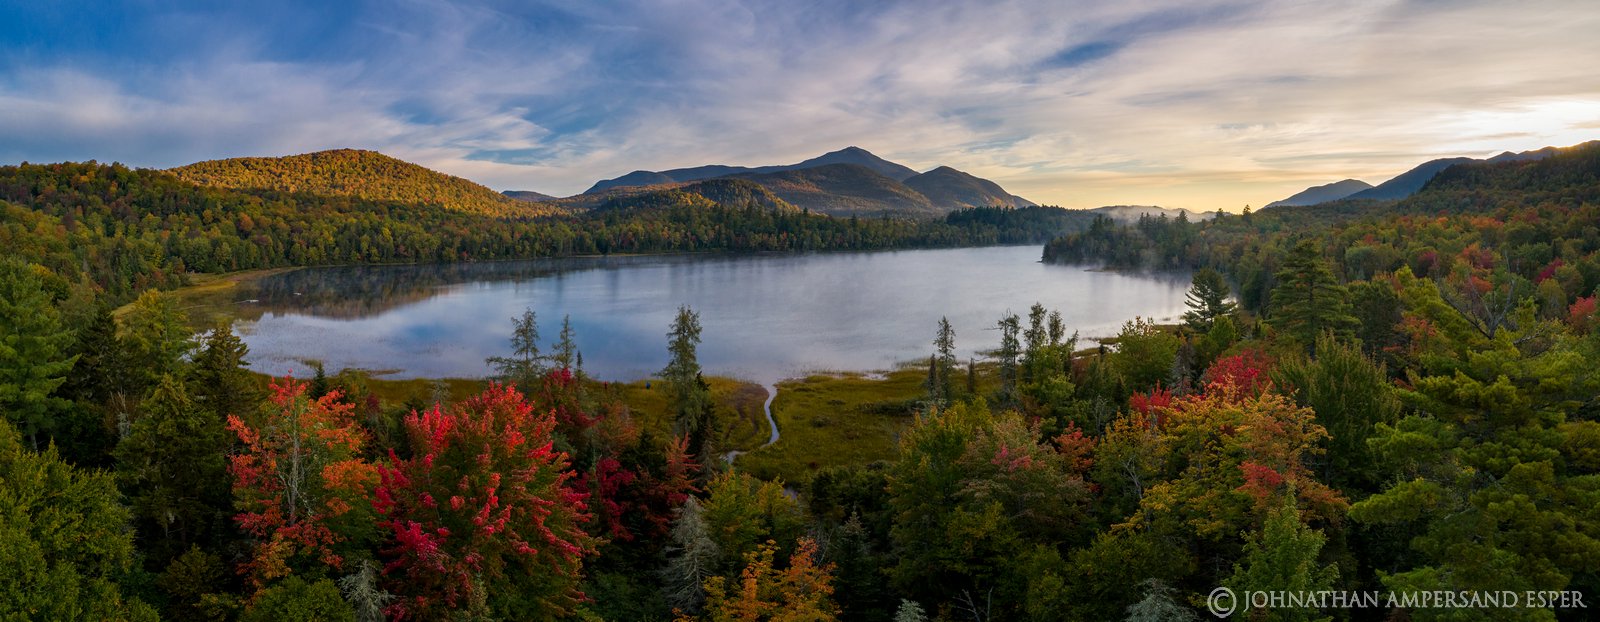 Connery Pond,Whiteface Mt,Whiteface,drone,aerial,2019,autumn,morning,fog,sunrise,Adirondacks,Adirondack Park,landscape,photography...